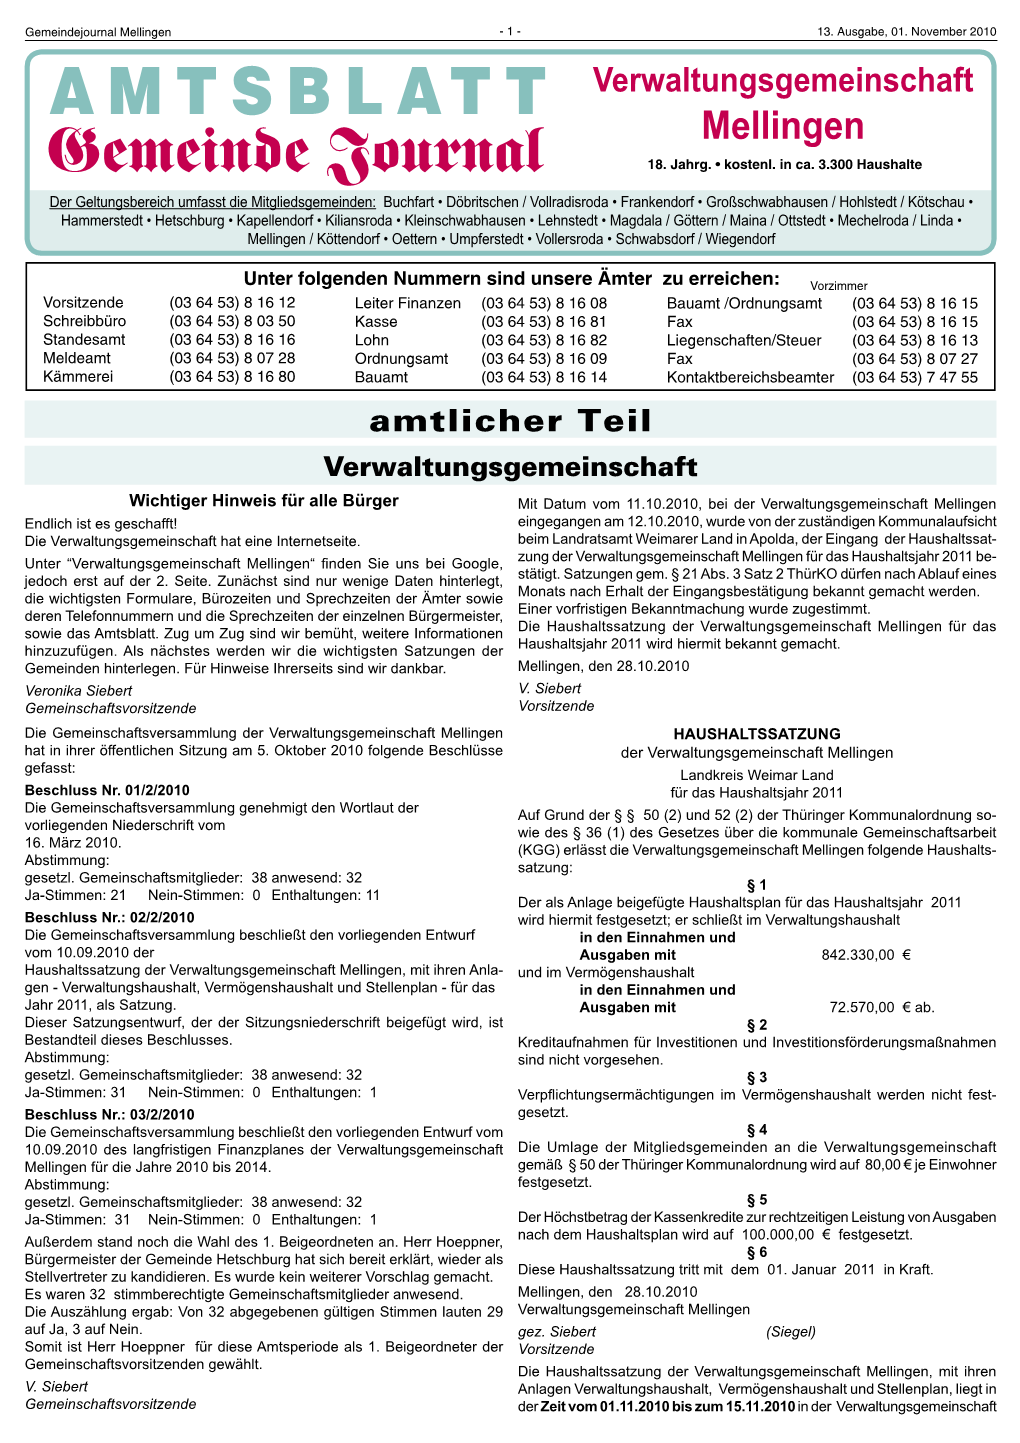 Amtsblatt 13-10.Indd